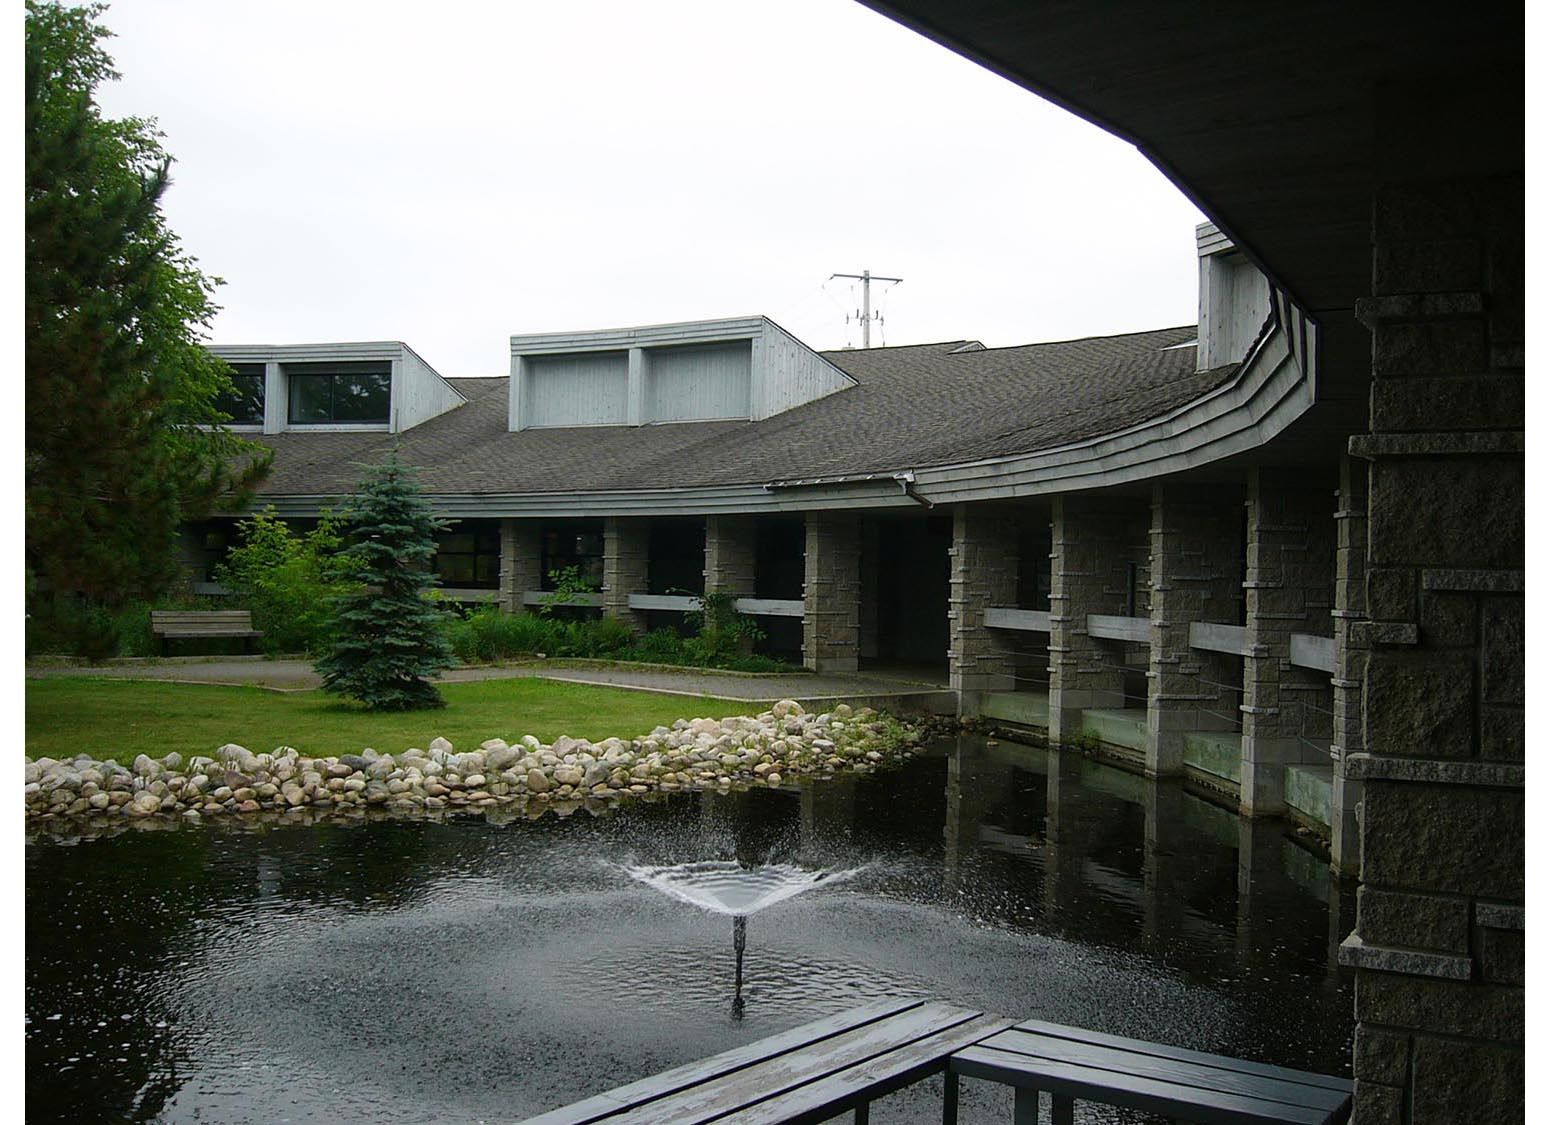  Ignace Regional Travel Centre, exterior photo of pond 